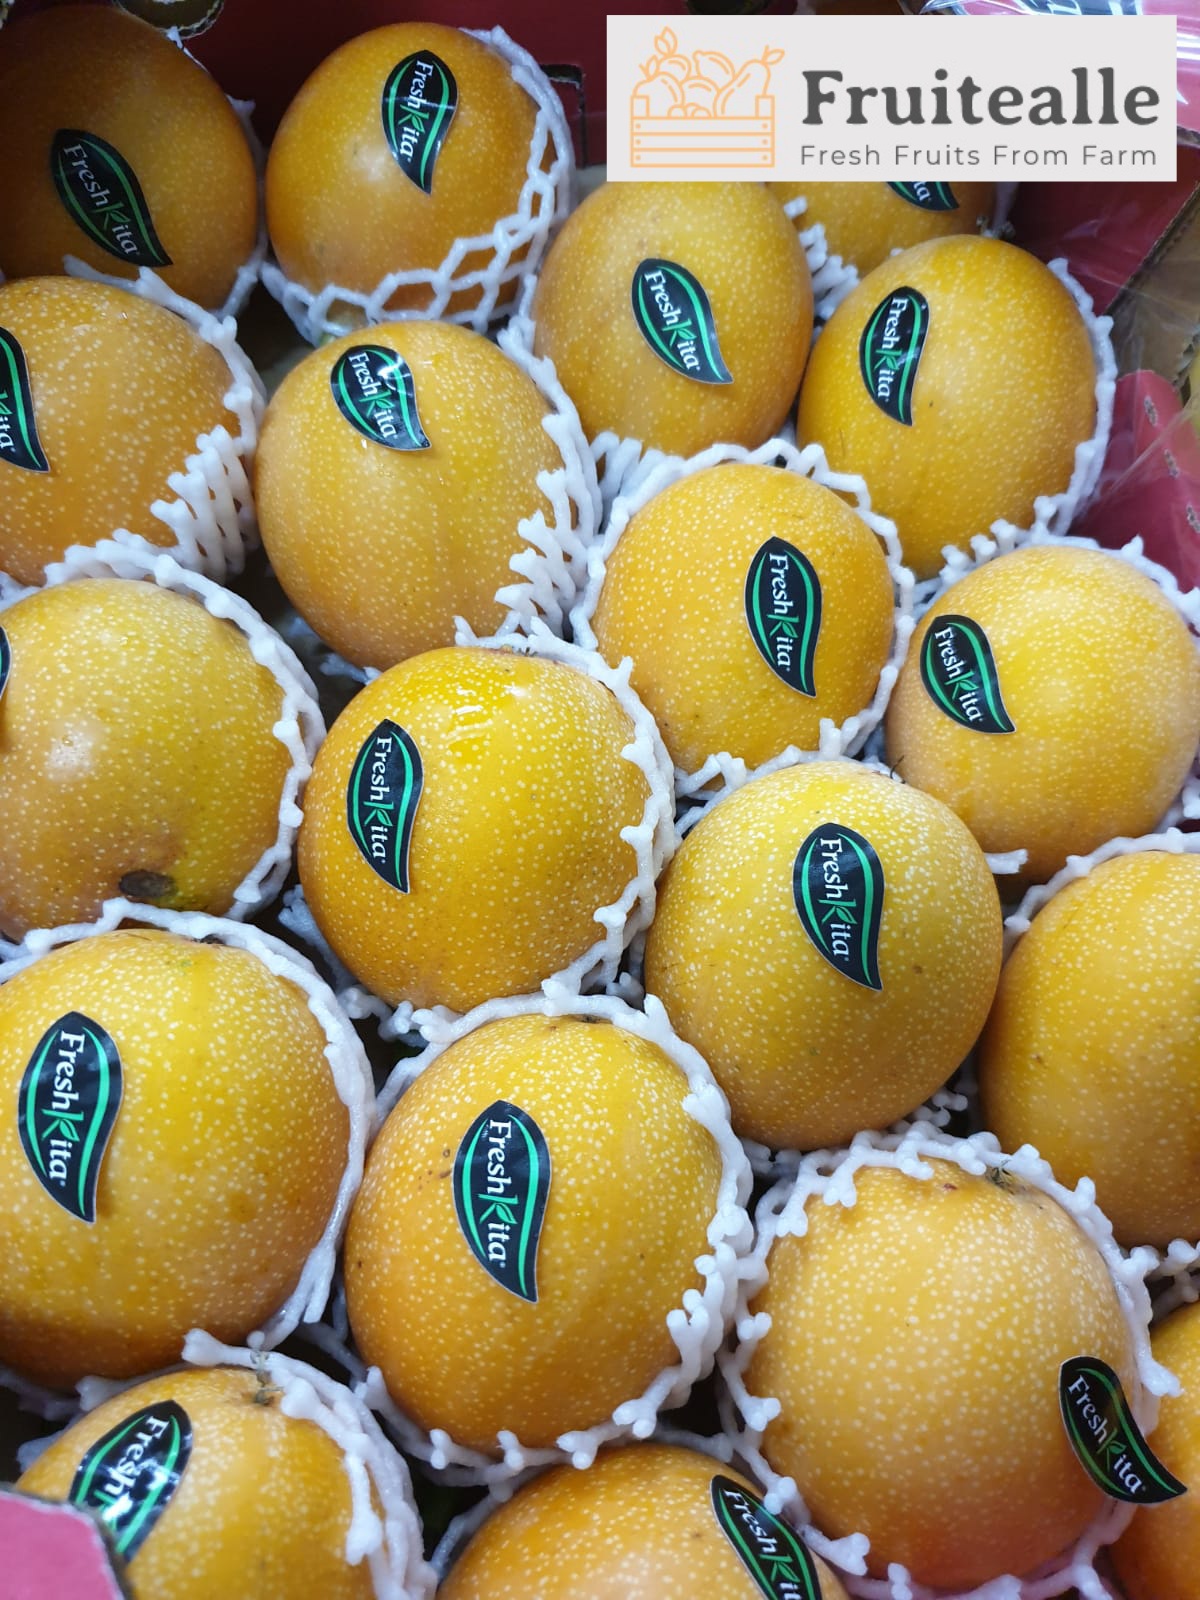 Passionfruit - Ecuador Granadilla Yellow Passionfruit